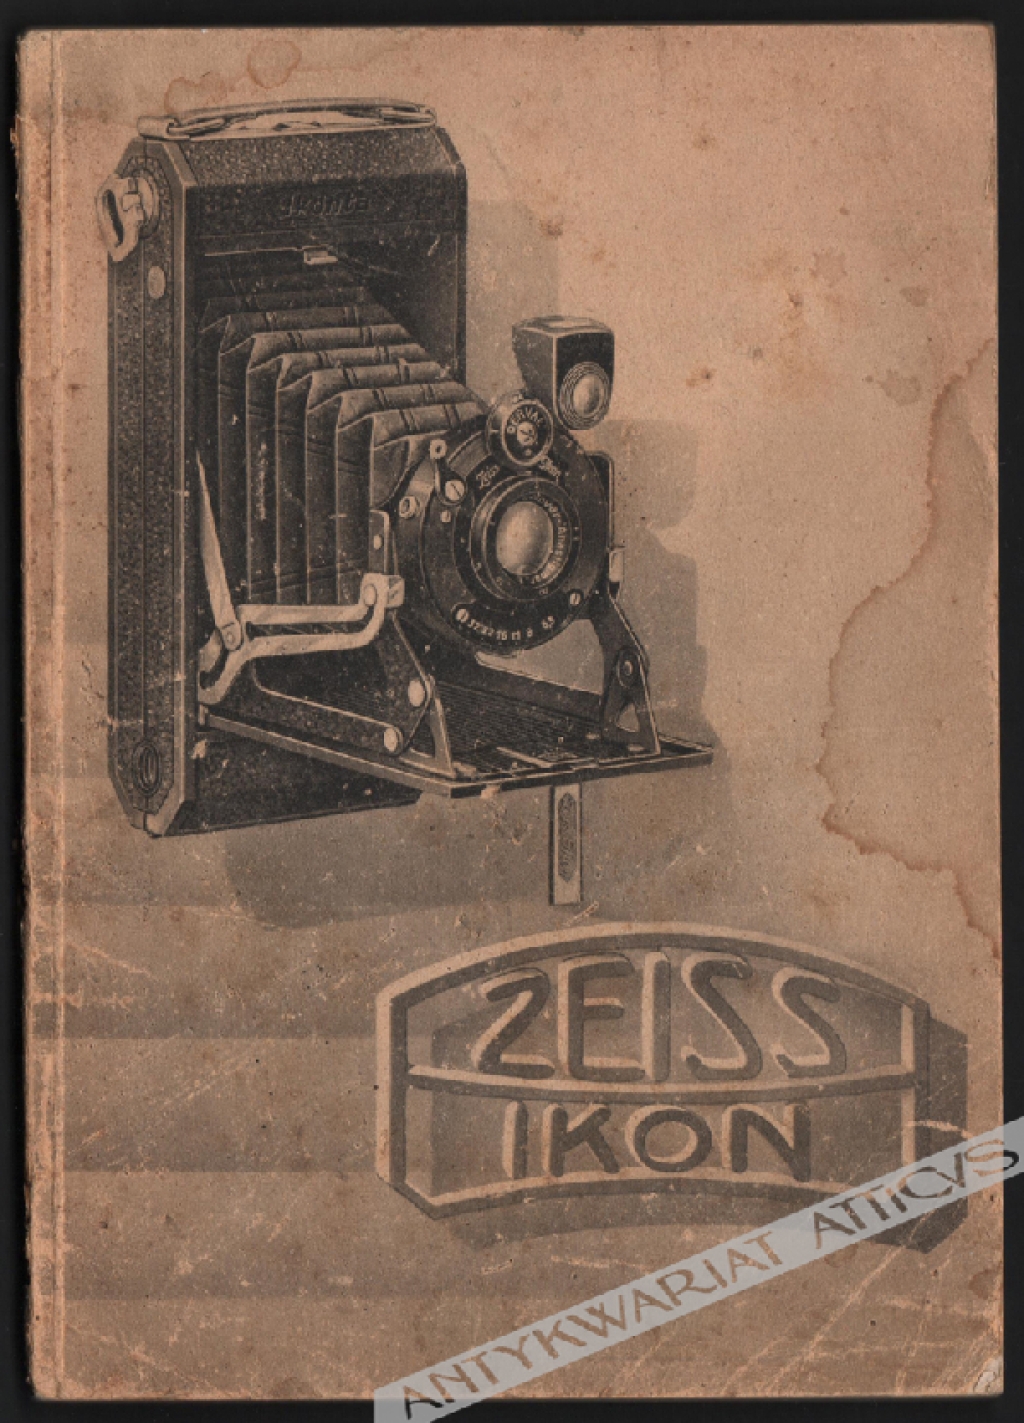 [katalog reklamowy] Zeiss Ikon. Kamery fotograficzne i przybory do nich. Katalog C352a 1930/31